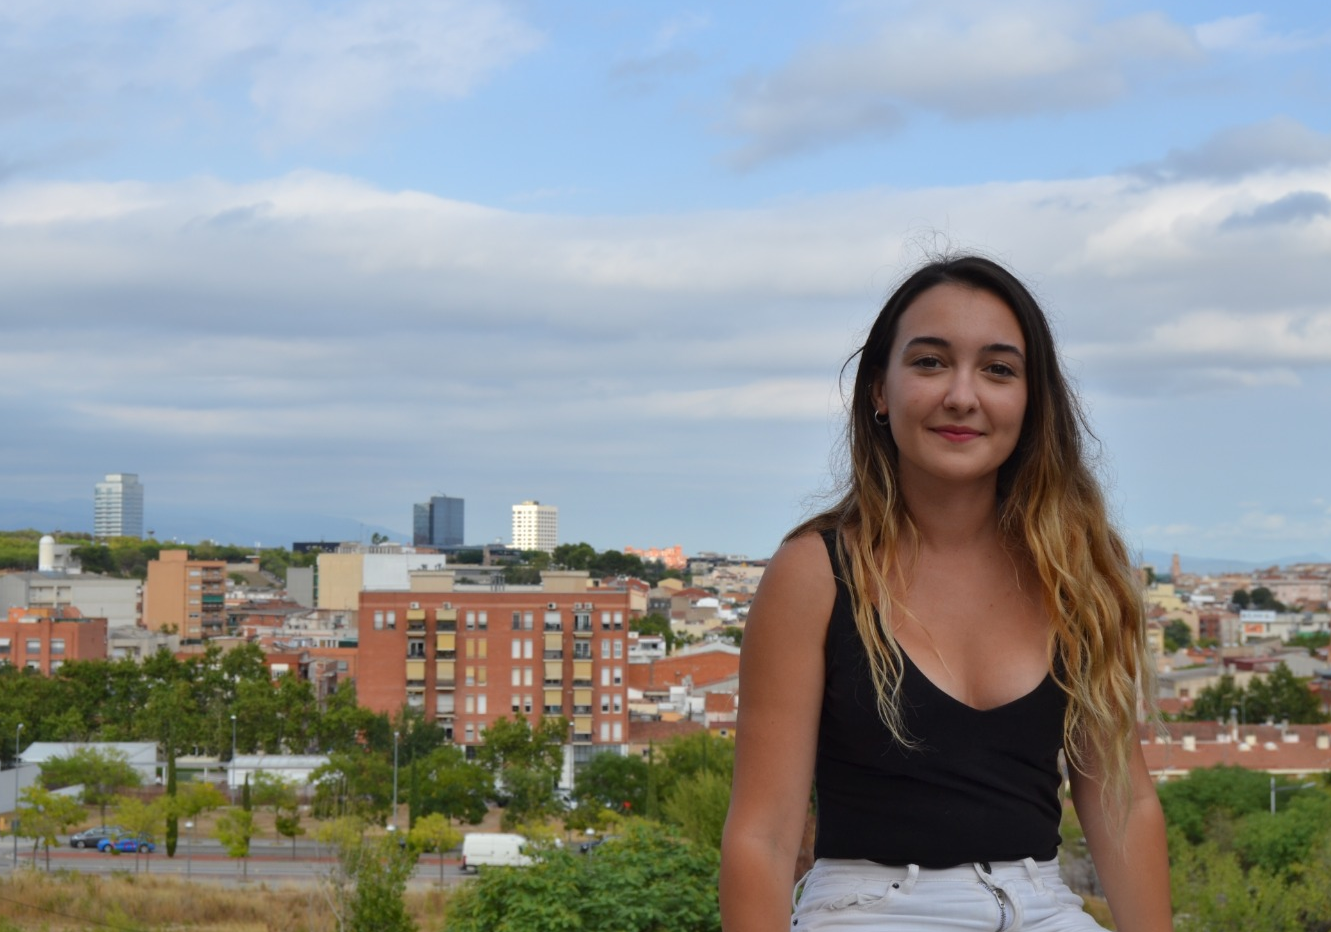 El Jovent Republicà de Sabadell ha escollit a Laia Silvestre per ser la nova portaveu